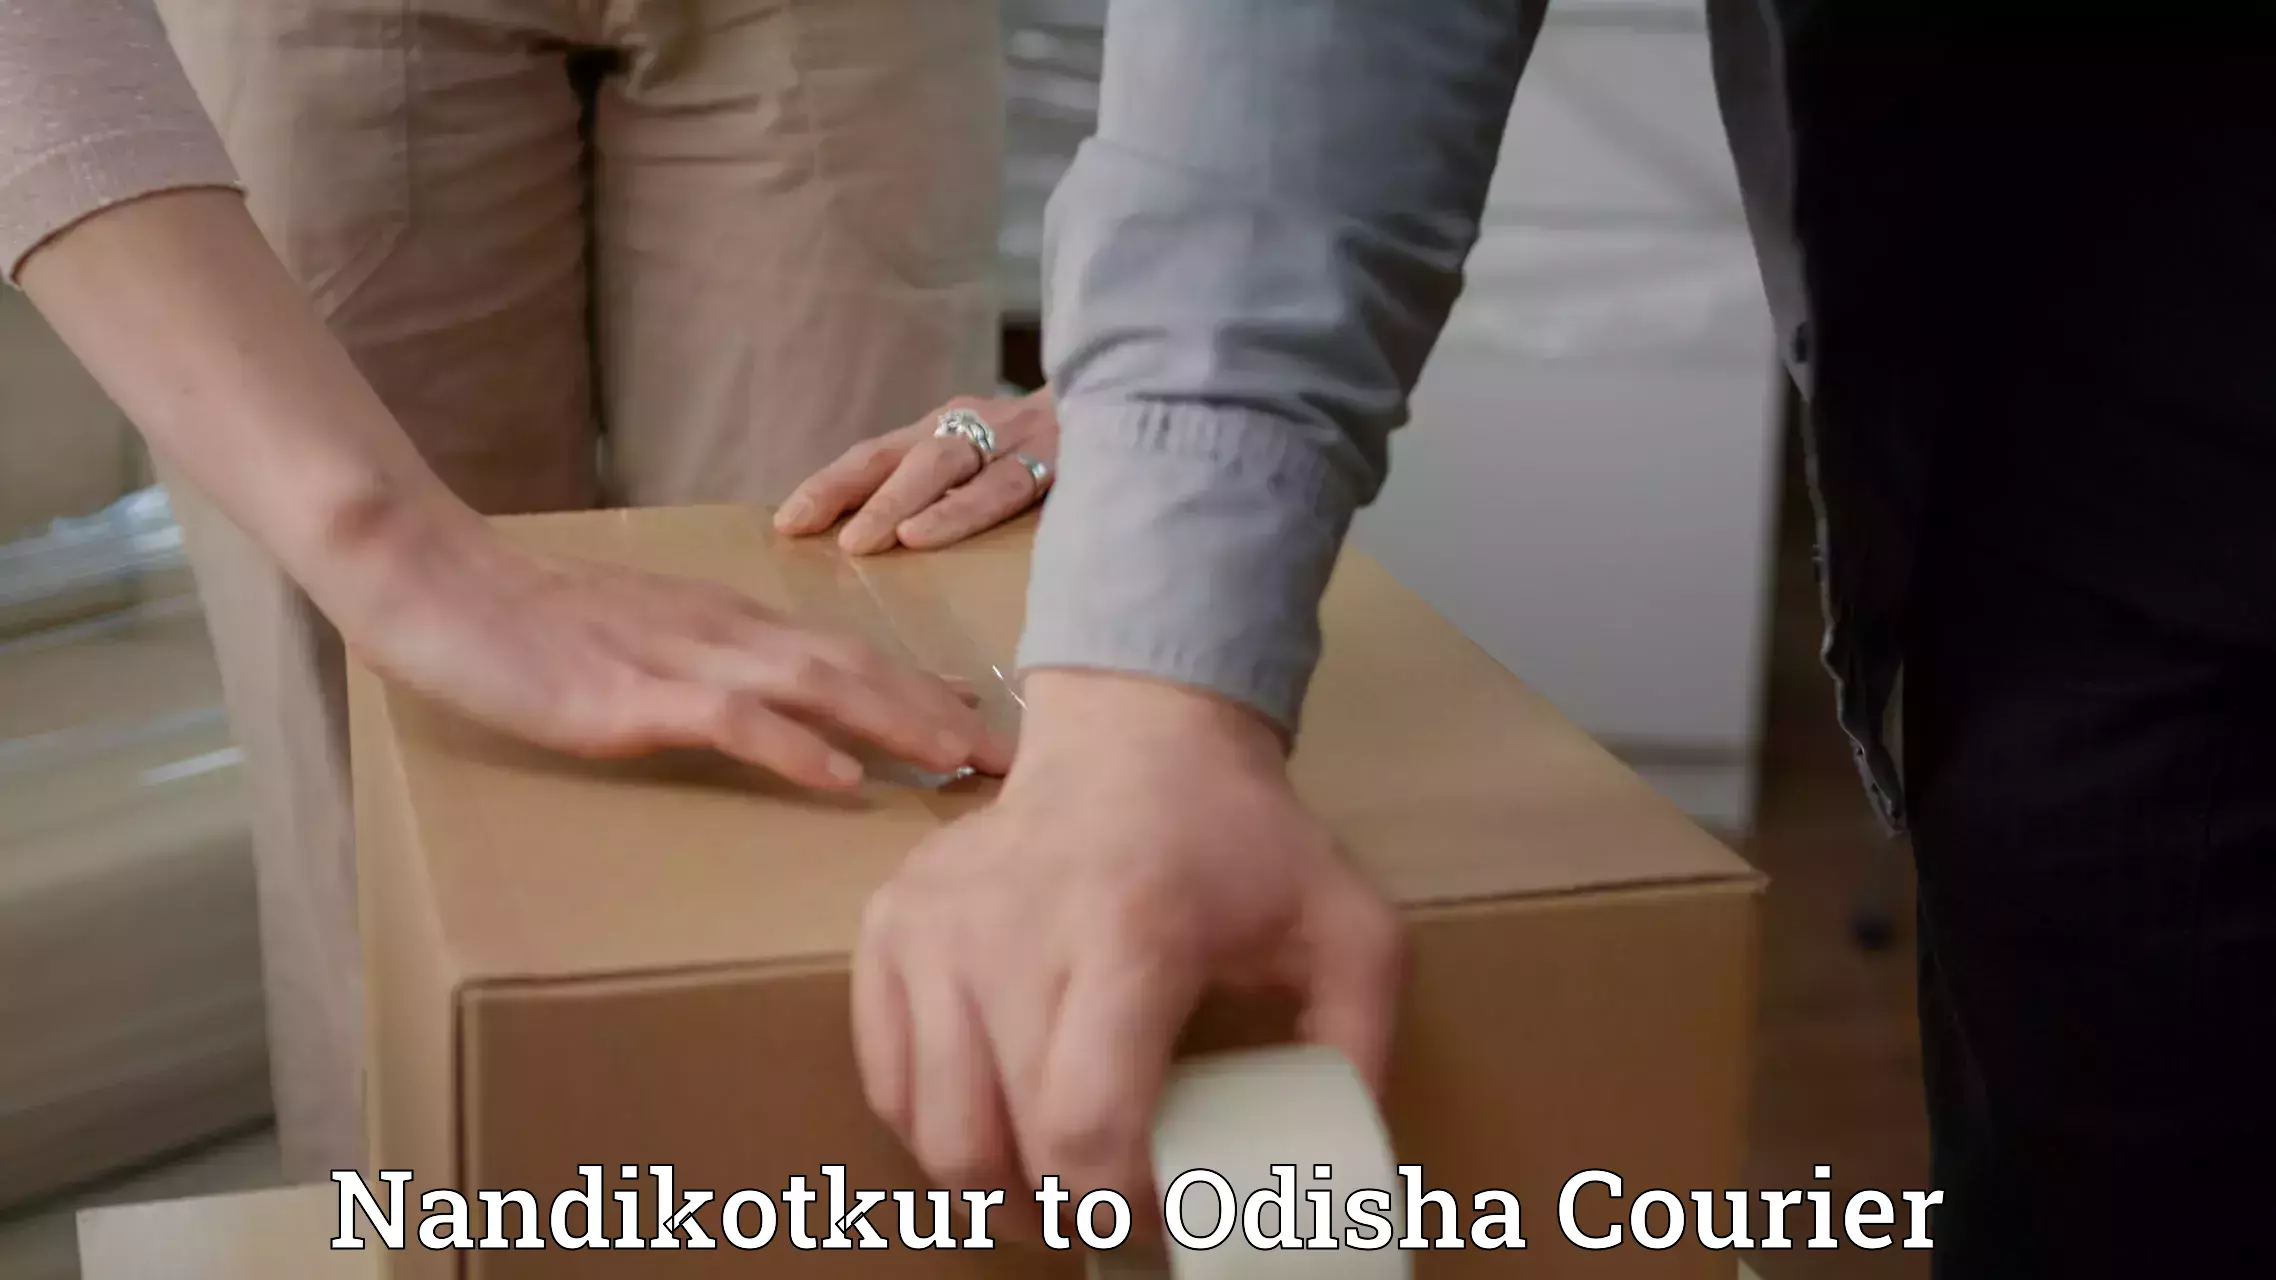 Professional courier handling Nandikotkur to Junagarh Kalahandi